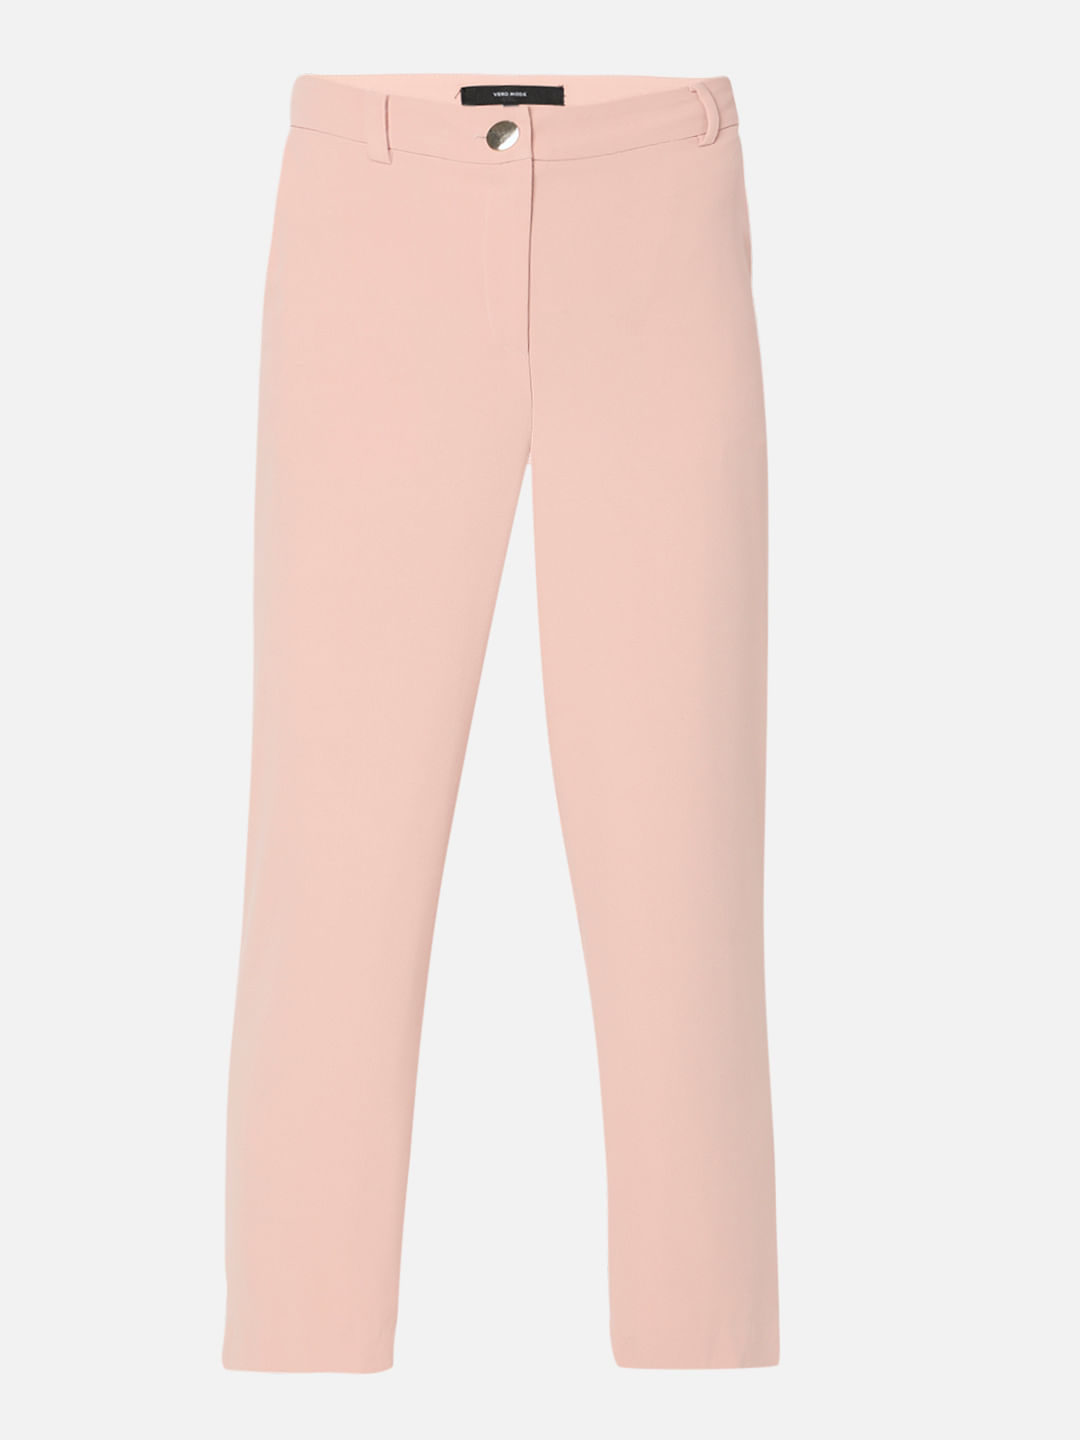 Buy Women Pink Solid Casual Slim Fit Trousers Online  816715  Van Heusen